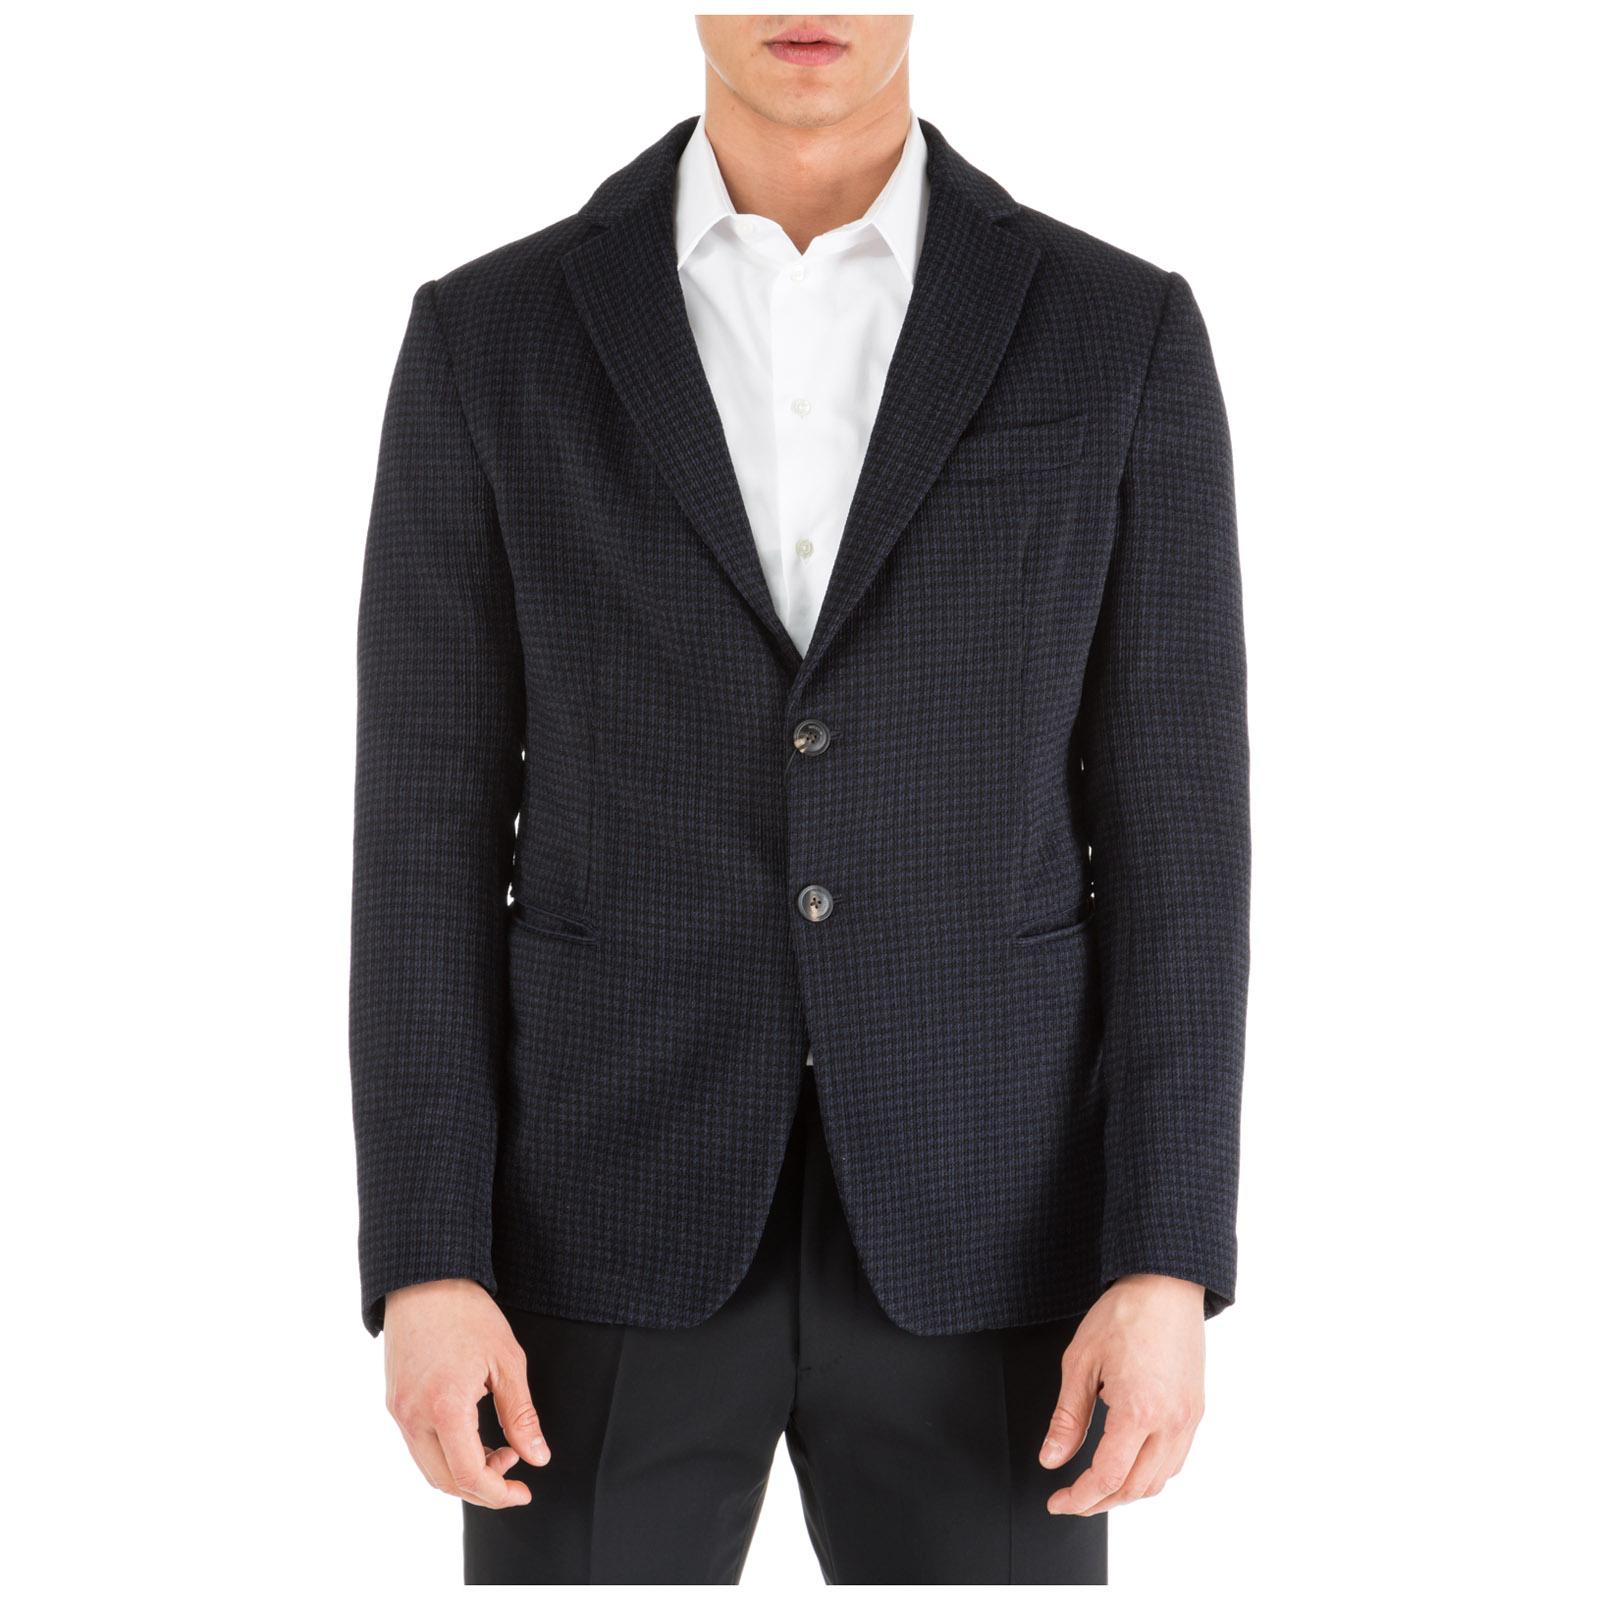 Emporio Armani Synthetic Men's Jacket Blazer in Black for Men - Lyst